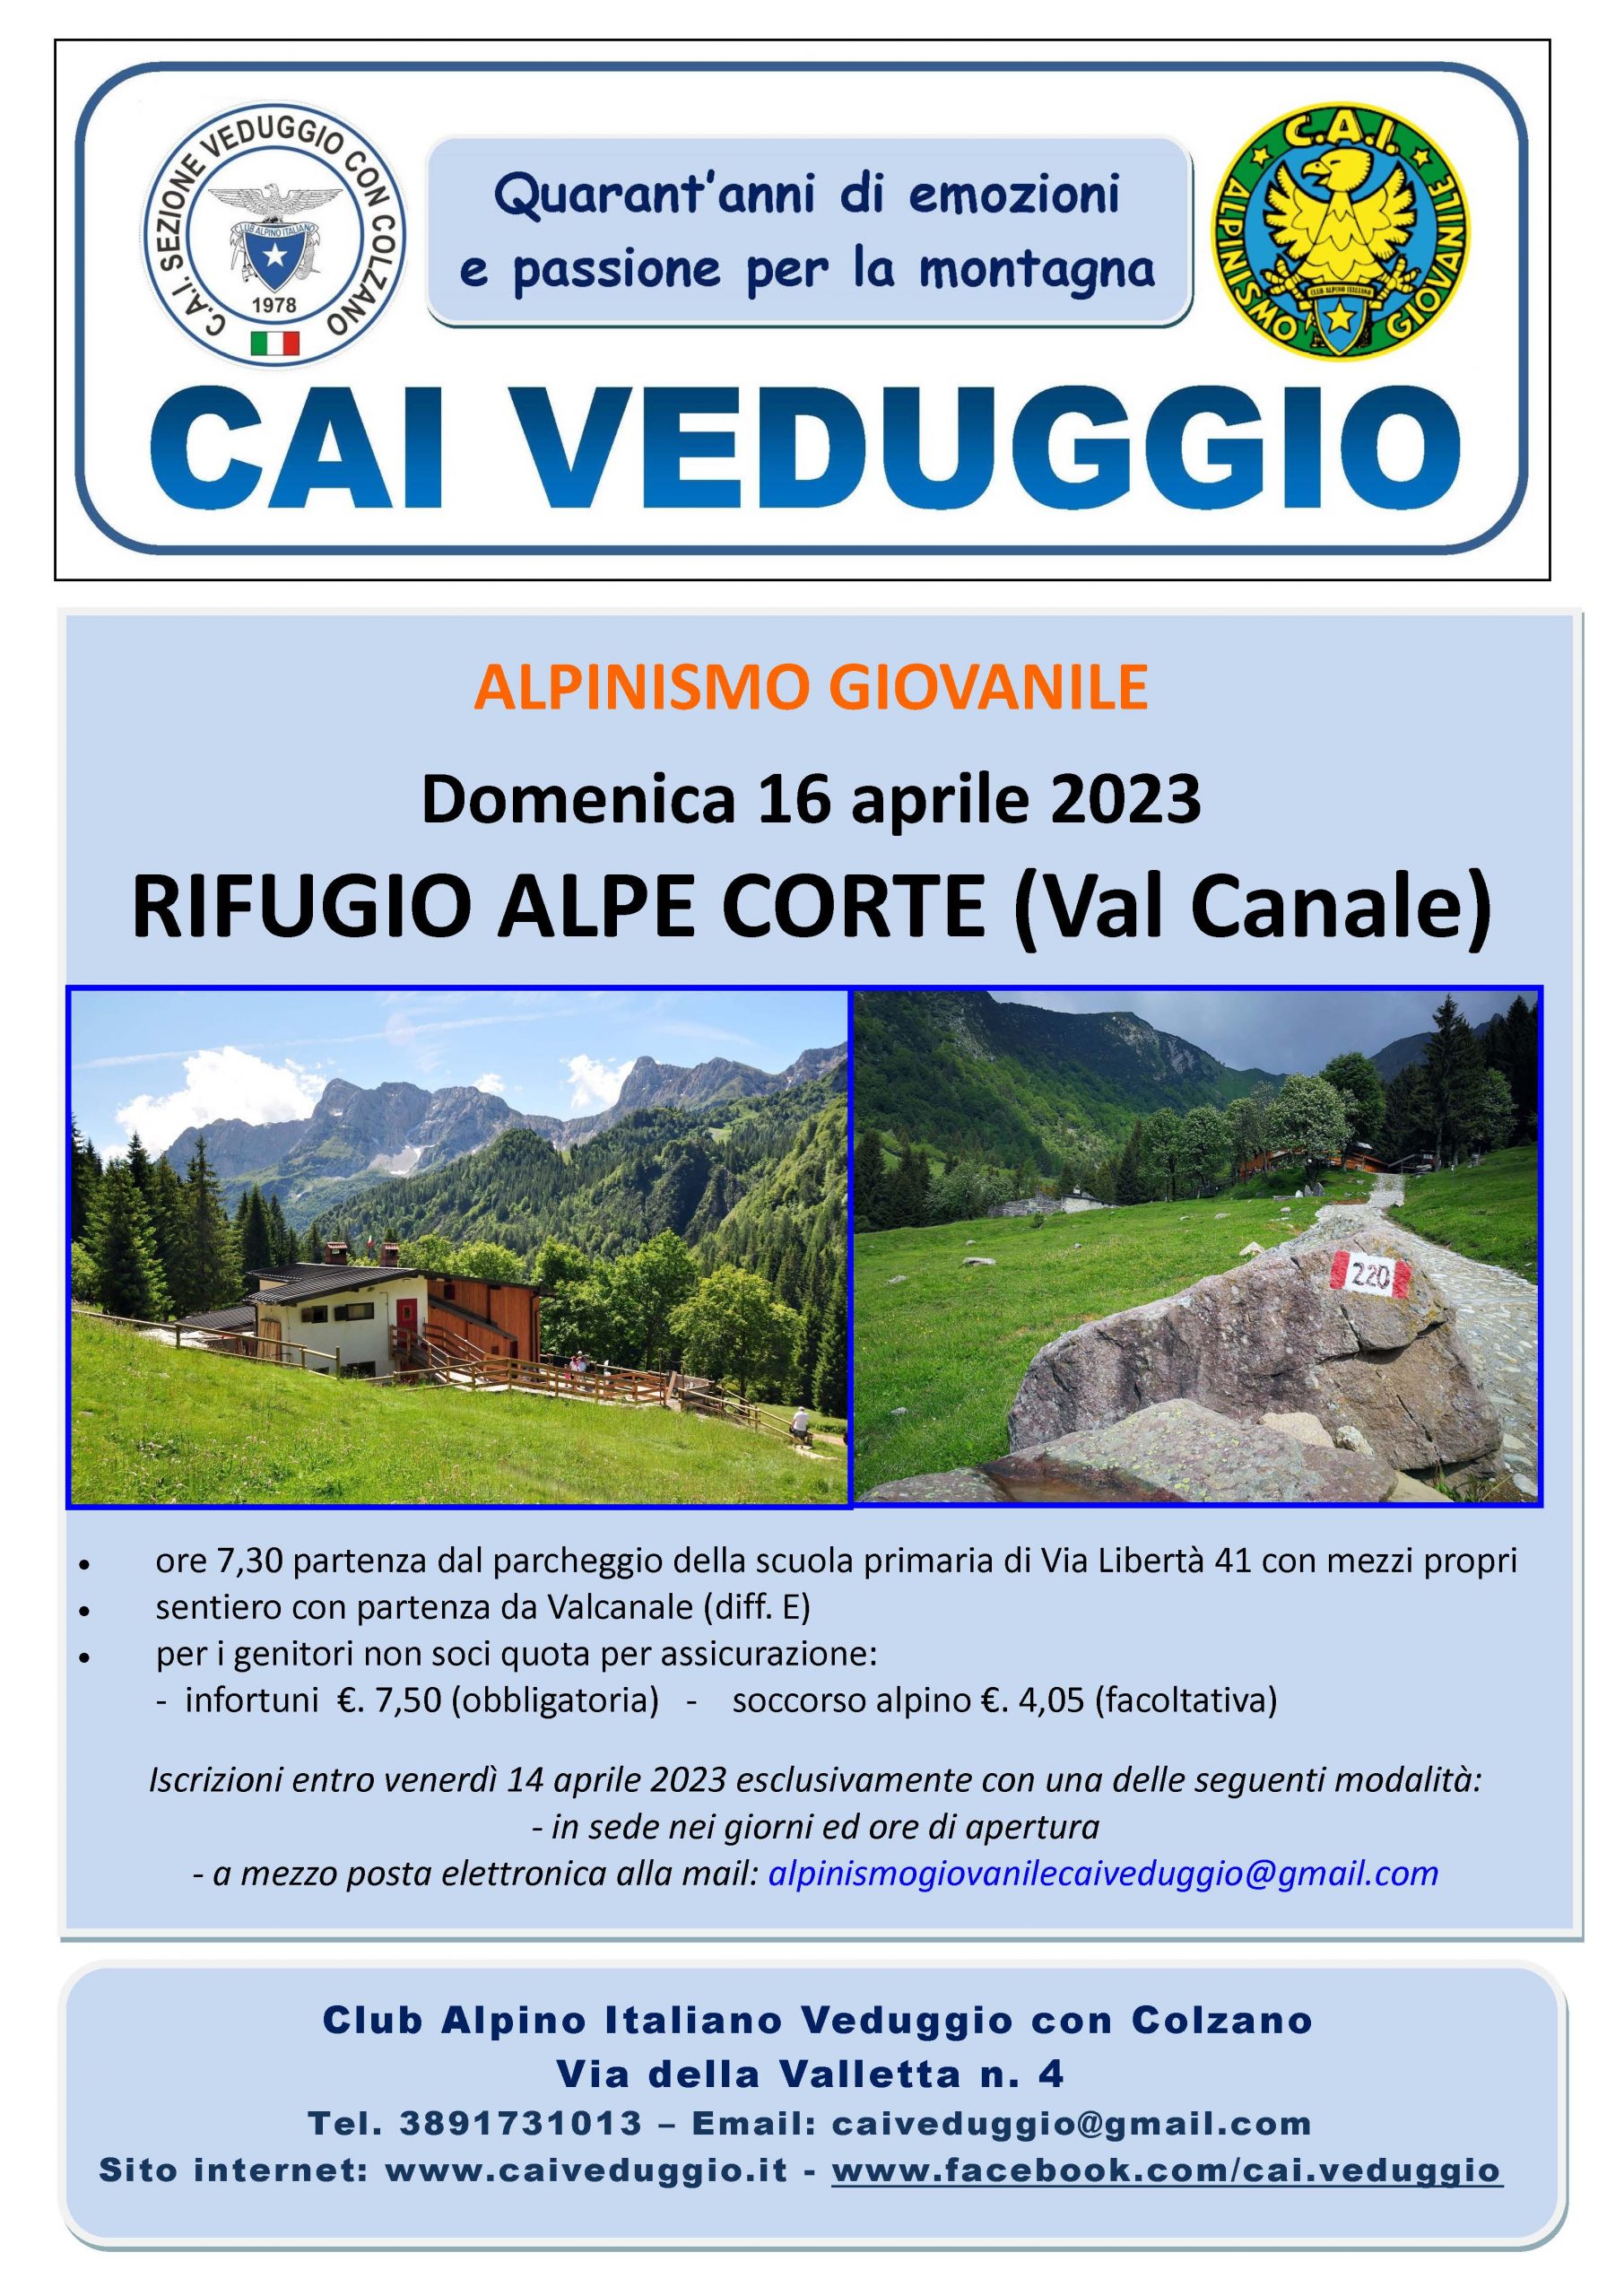 Domenica 16 aprile 2023 – Rifugio Alpe Corte (Val Canale) – Alpinismo Giovanile